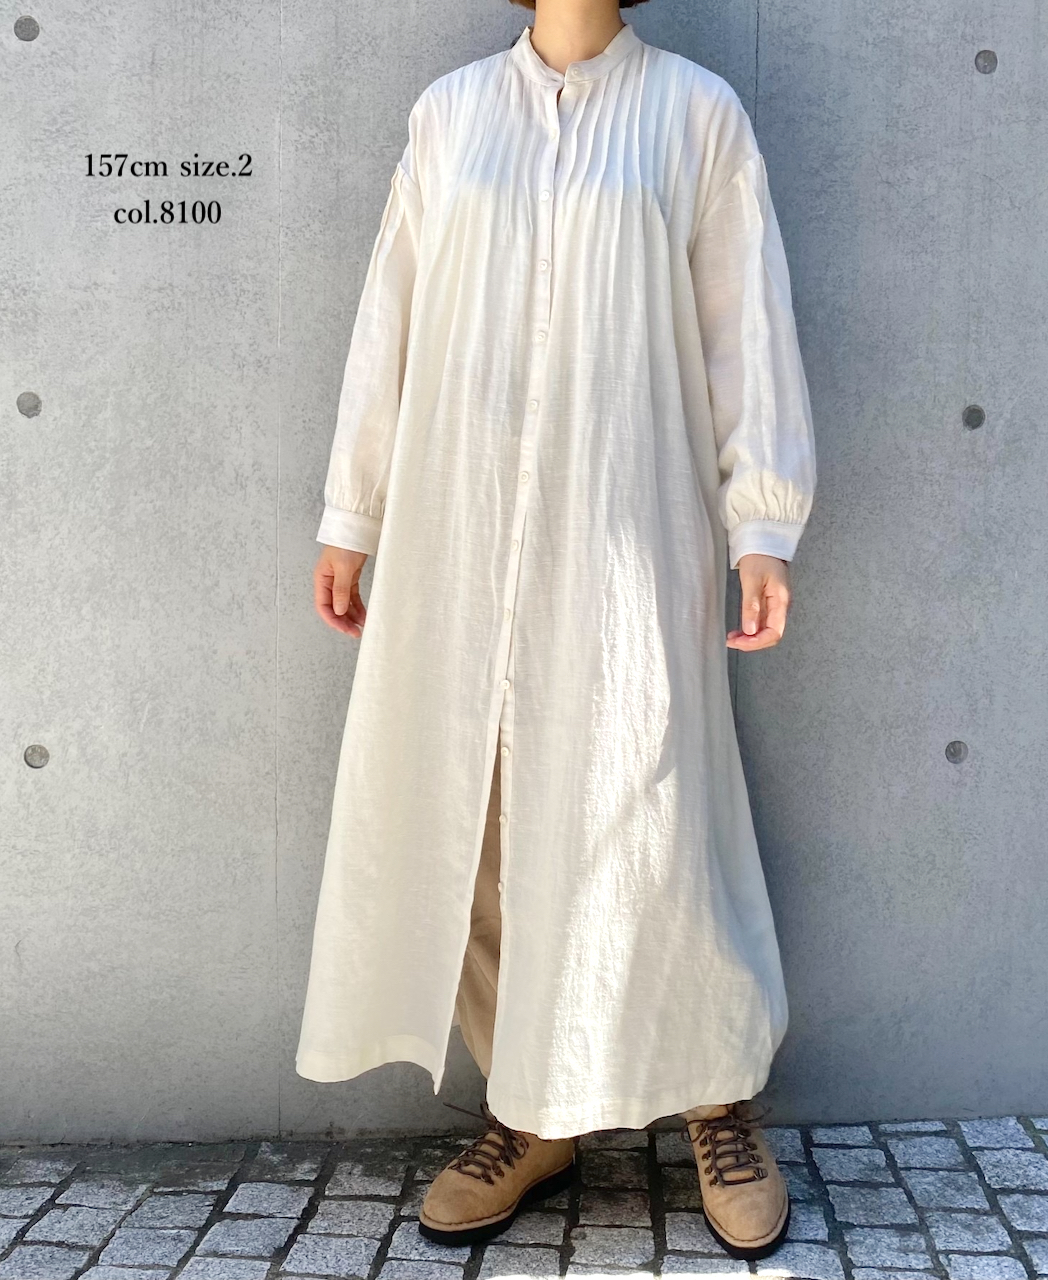 INSL22604 (ワンピース) WOOL/LINEN PLAIN BANDED COLLAR PINTUCK DRESS